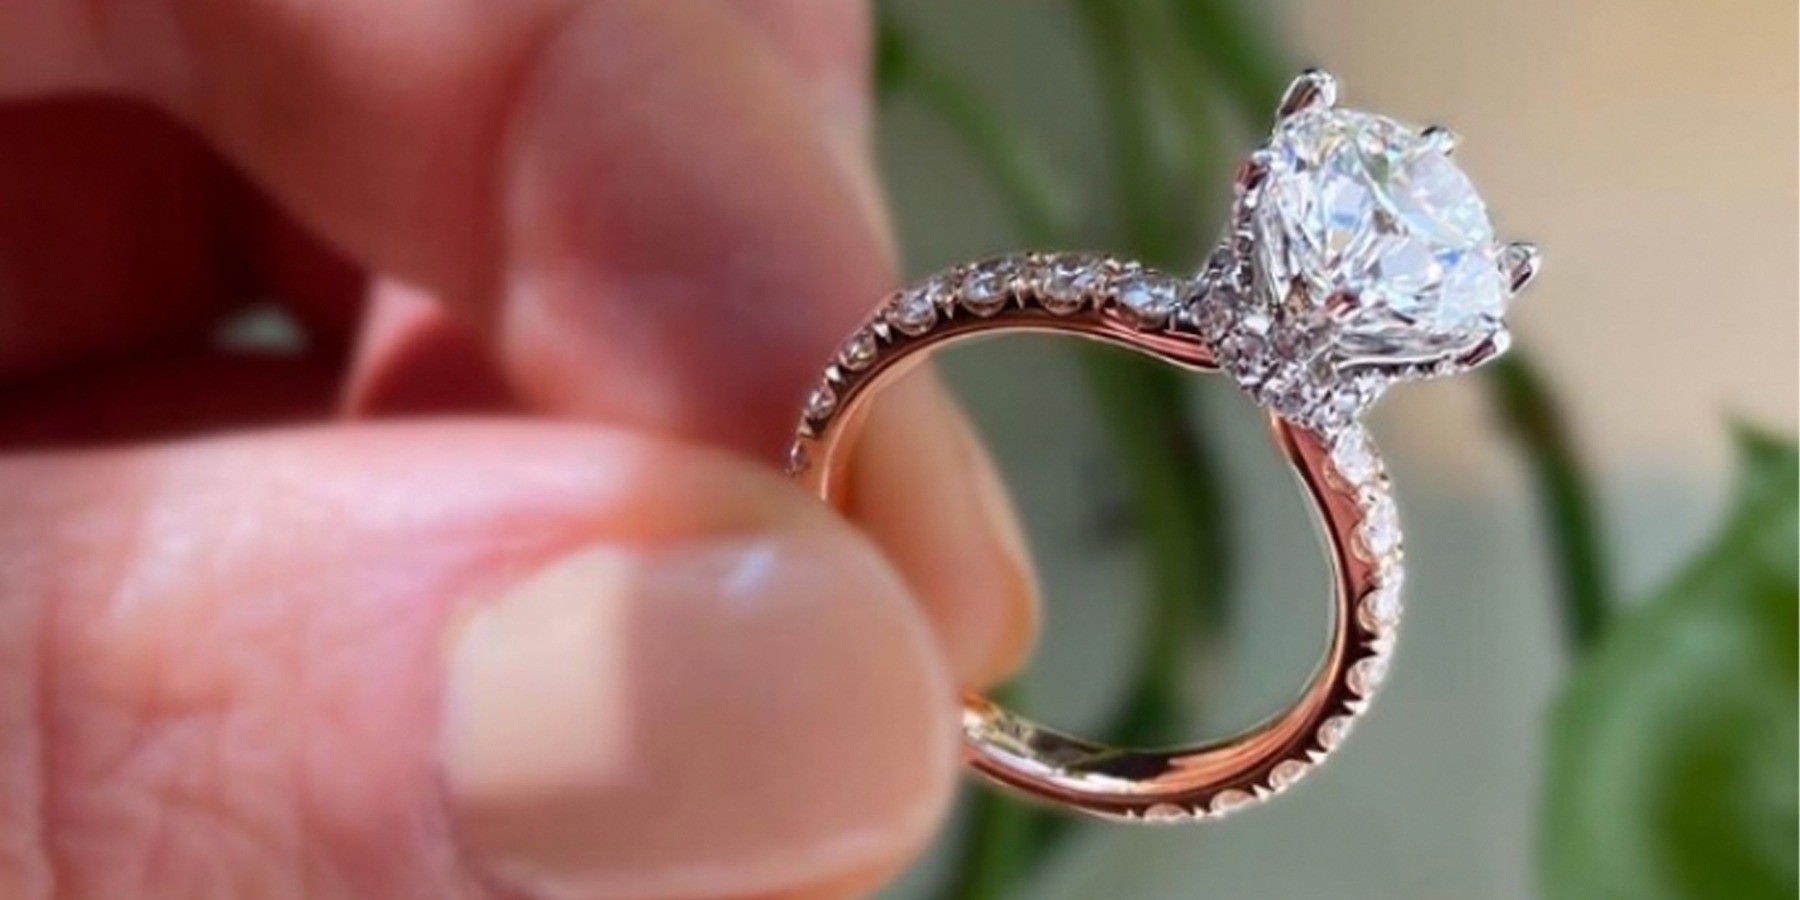 Hướng dẫn để tìm những chiếc nhẫn cưới sang trọng nhất - 3